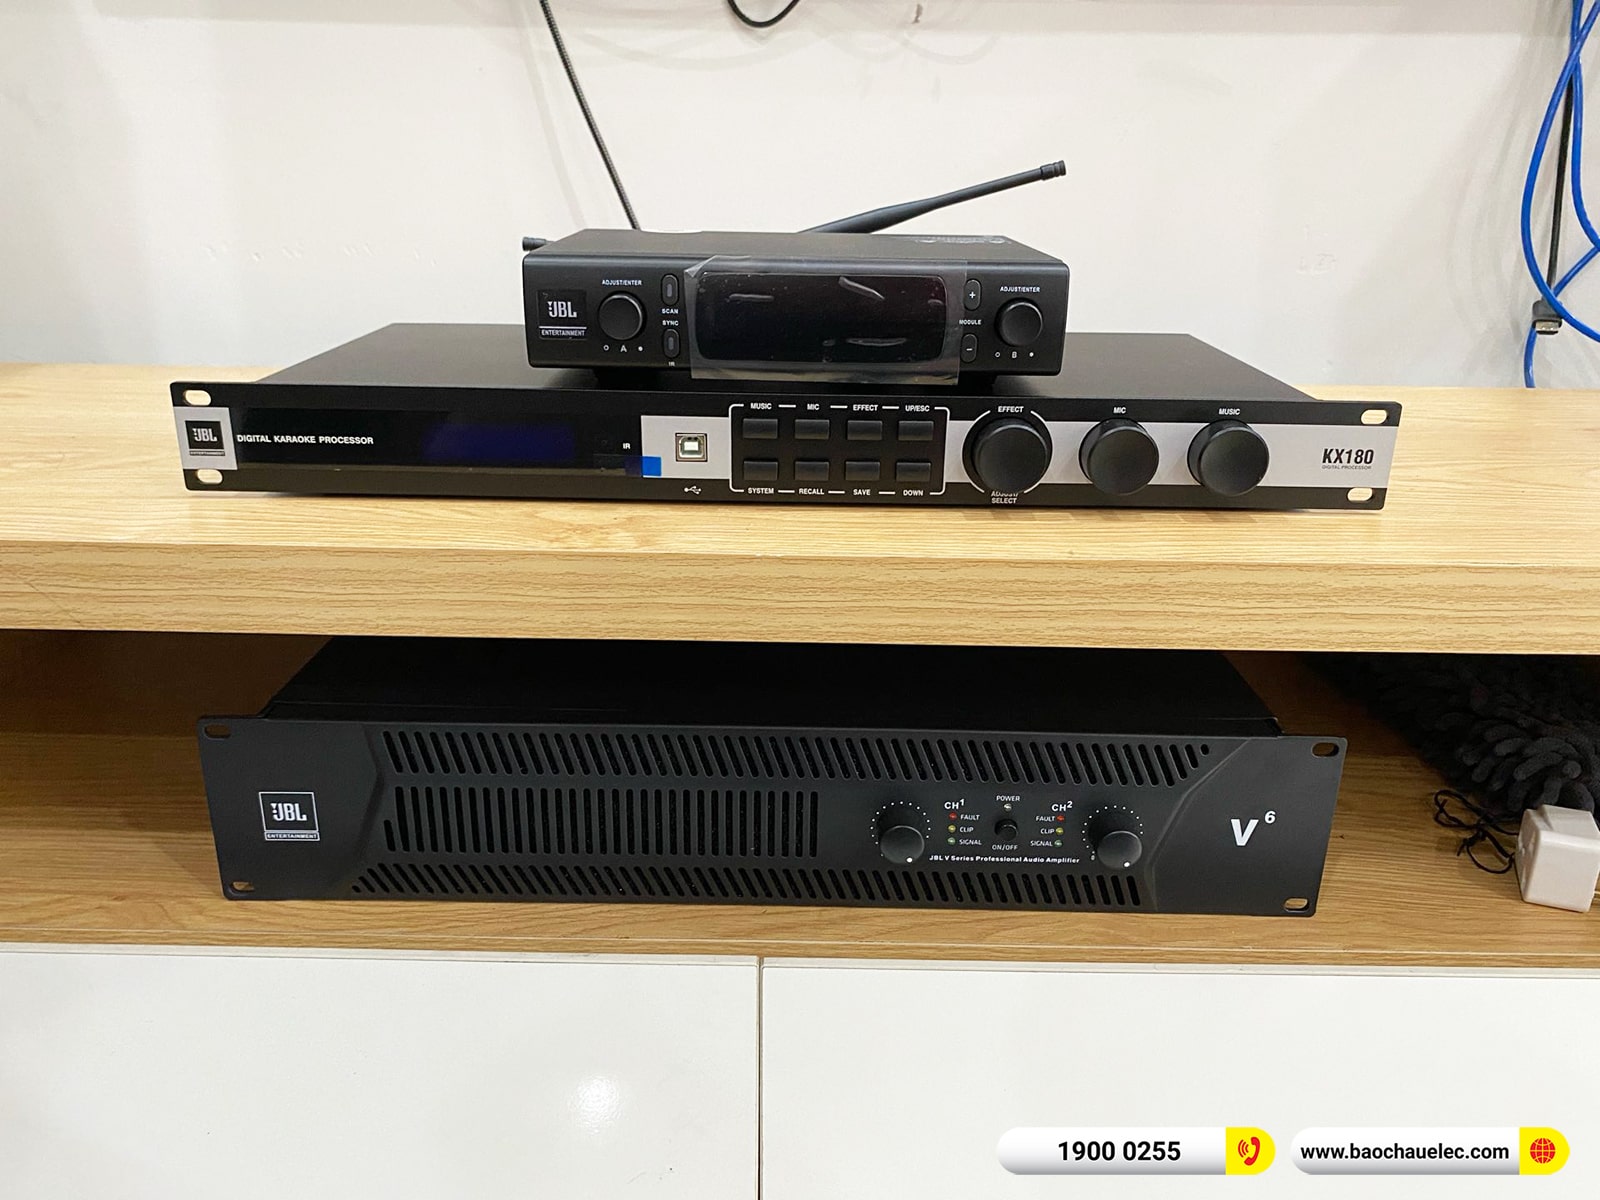 Lắp đặt dàn karaoke JBL hơn 63tr cho anh Tuấn Anh tại Hà Nội (JBL XS10, JBL V6, KX180A, A120P, JBL VM300)